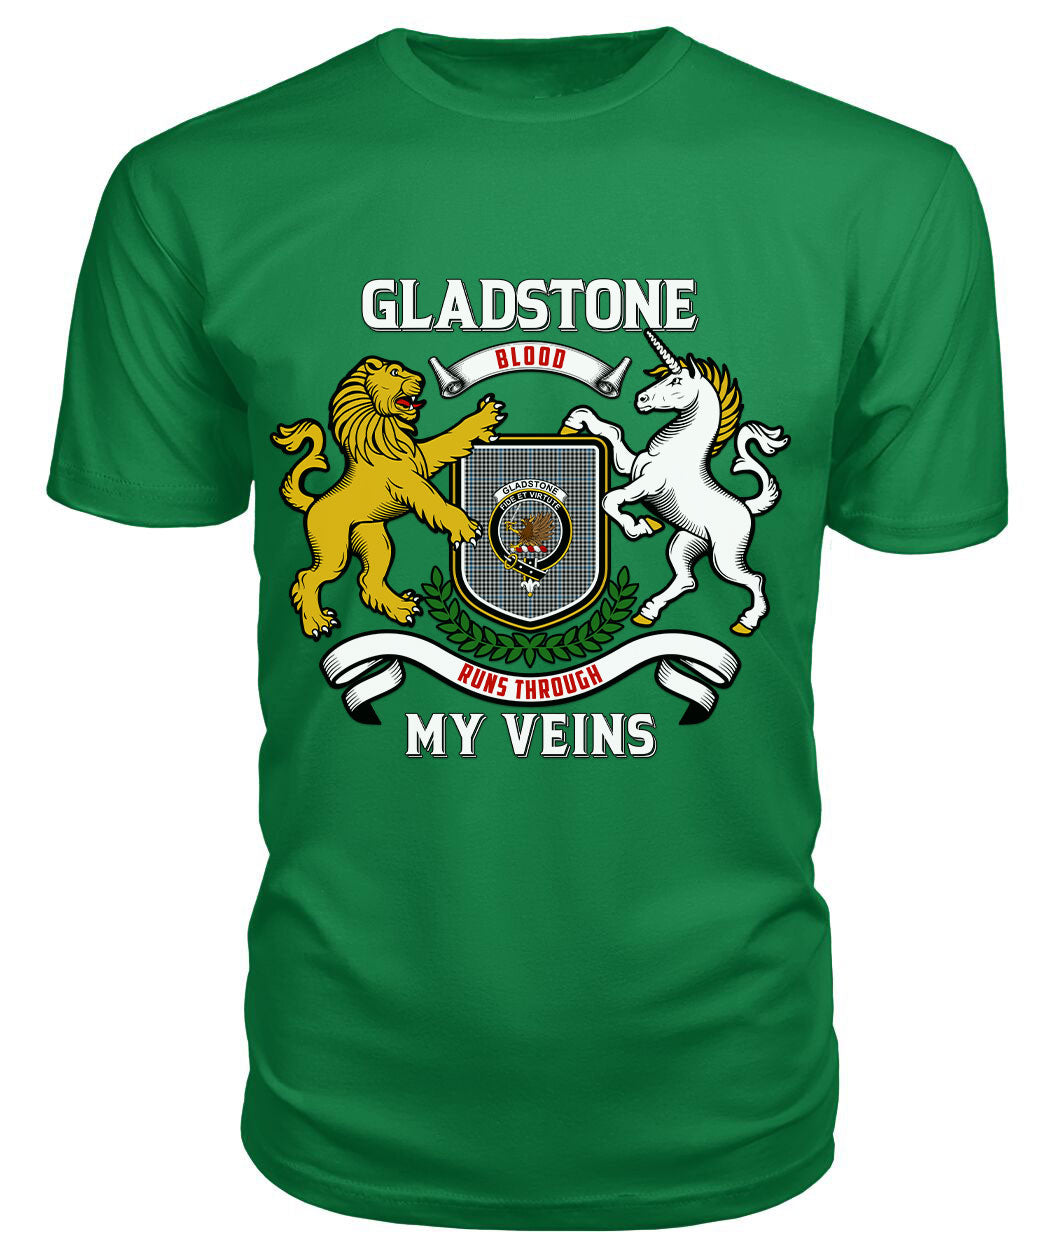 Gladstone Tartan Crest 2D T-shirt - Blood Runs Through My Veins Style